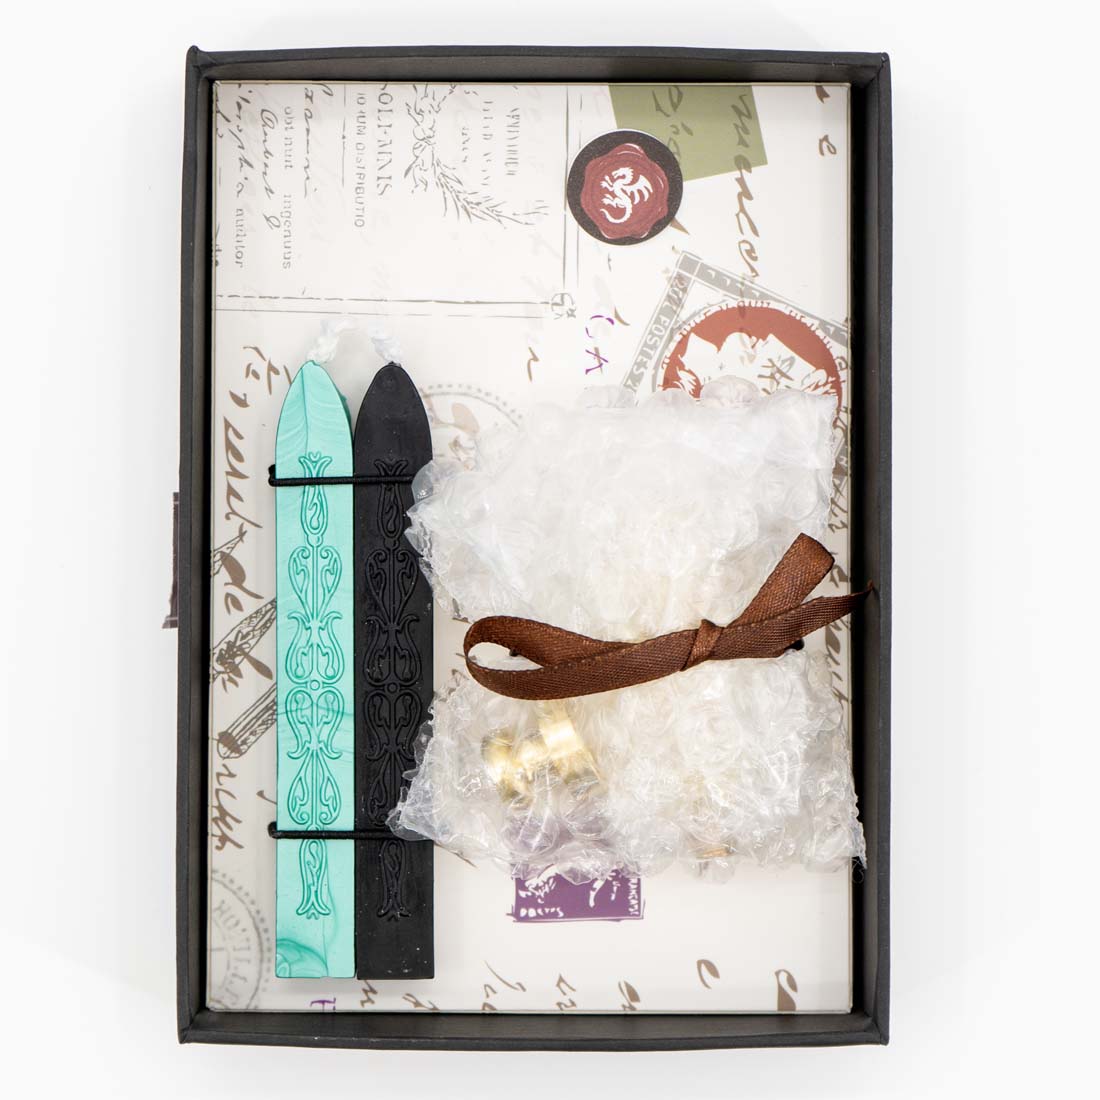 Dragon Murano Glass Handle Wax Seal Kit